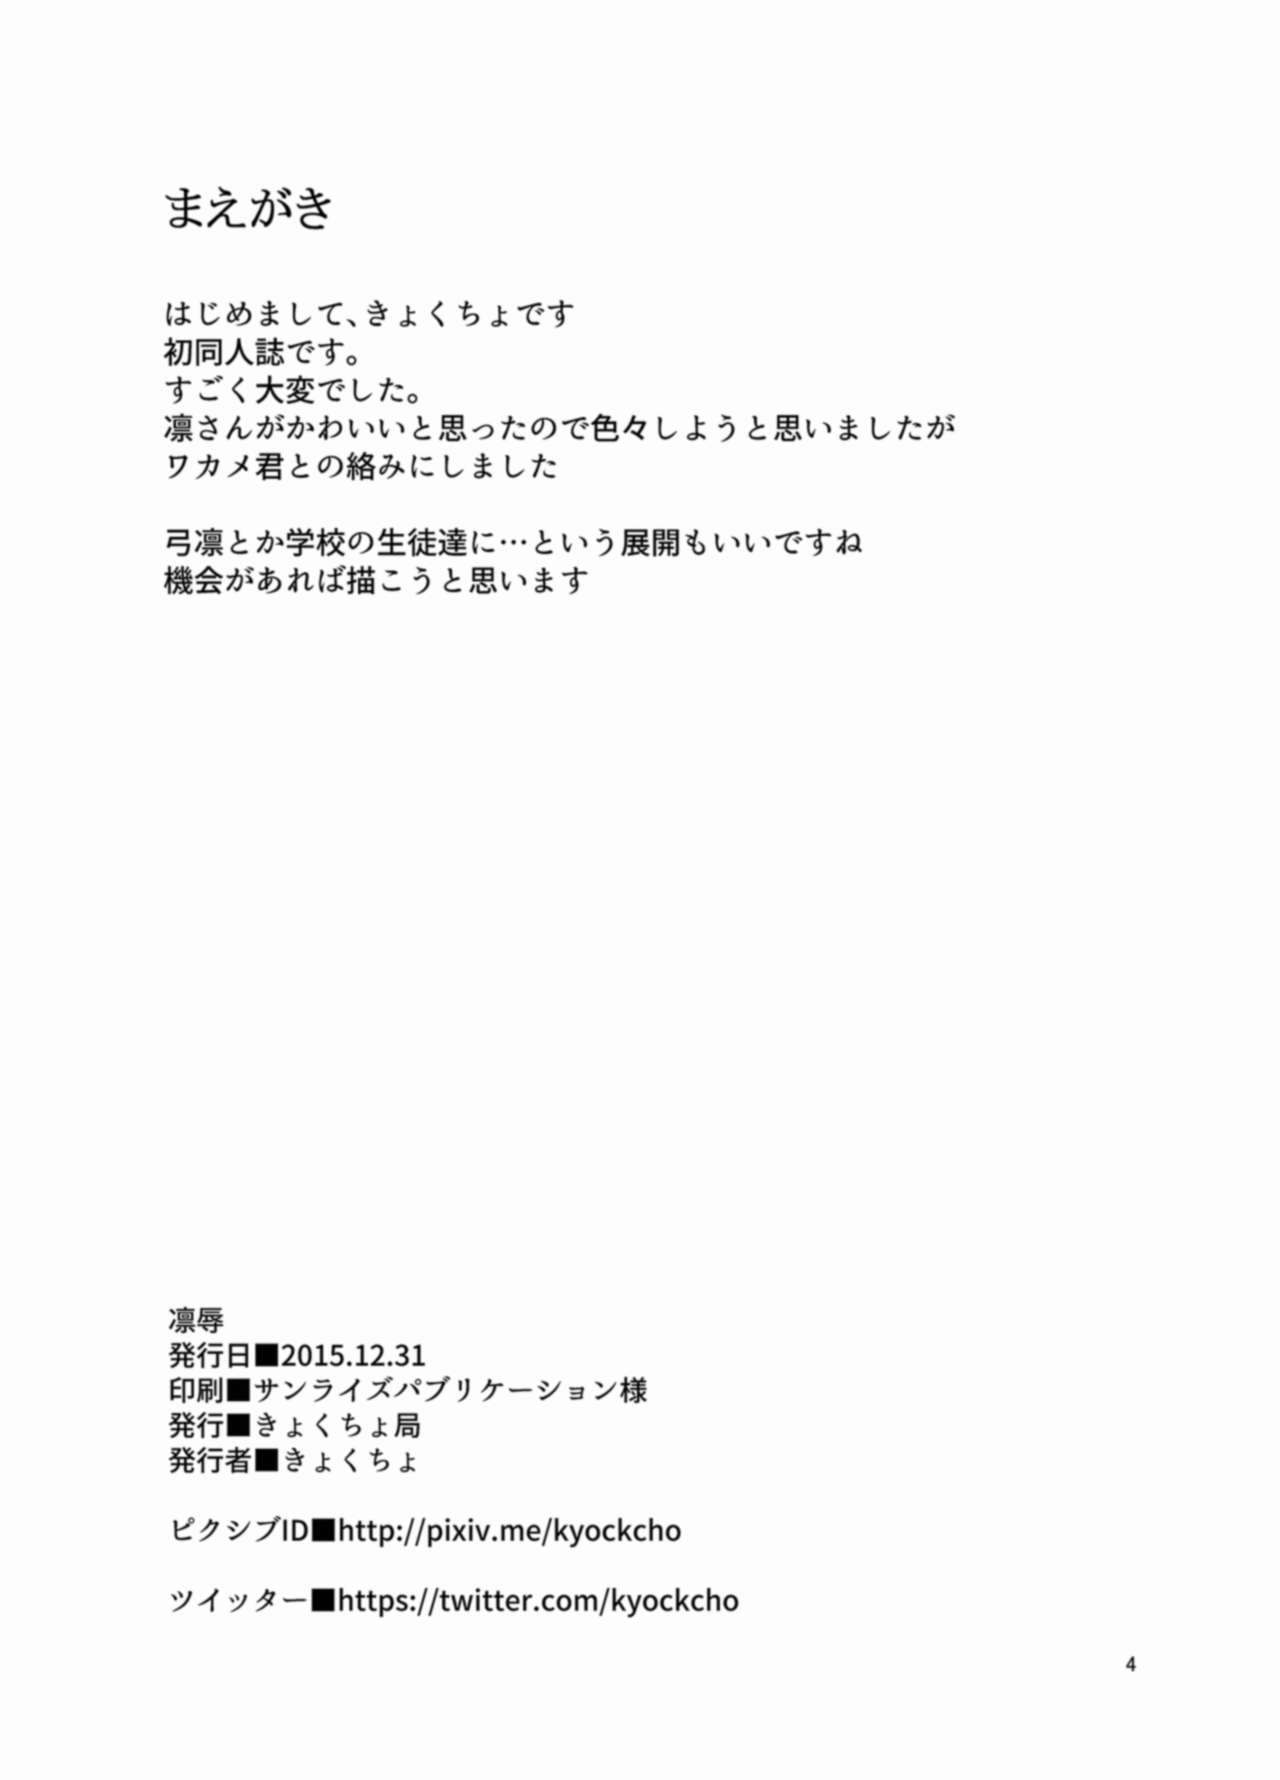 [Kyockchokyock (Kyokucho)] Rinjoku (Fate/Stay Night) [Digital] [きょくちょ局 (きょくちょ)] 凛辱 (Fate/stay night) [DL版]